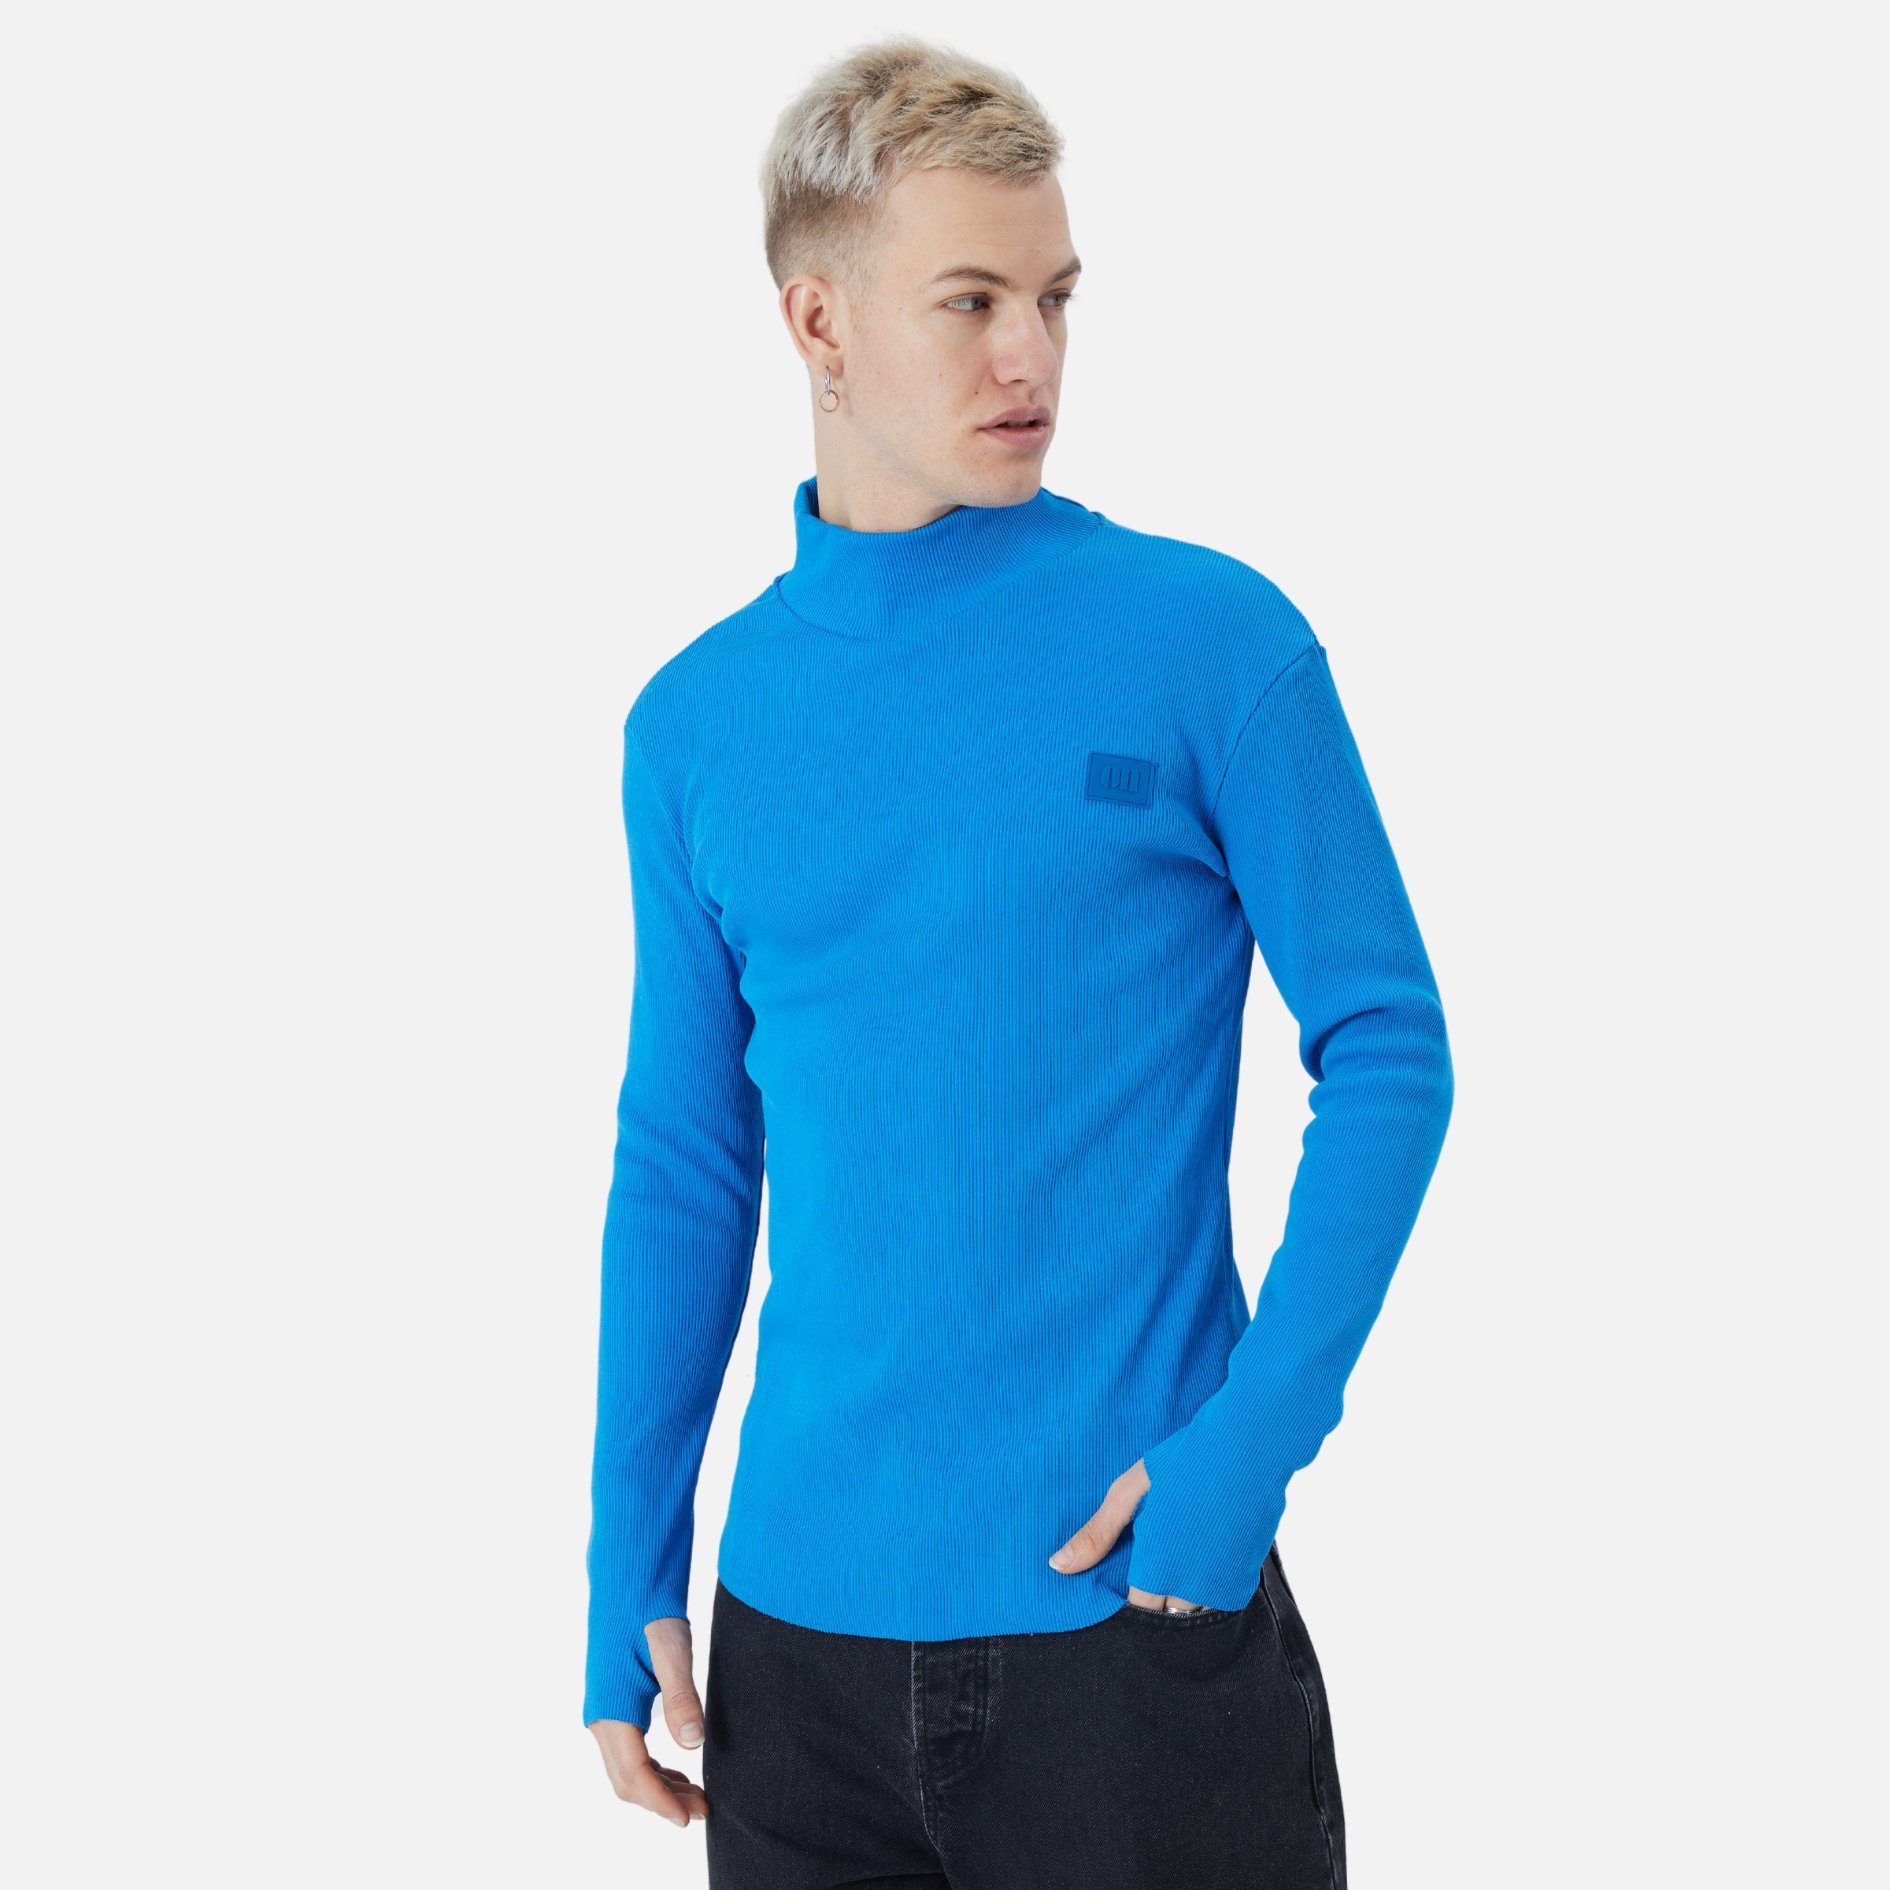 COFI Casuals Sweatshirt Herren Blau Regular Pullover Sweatshirt Rundhals Fit